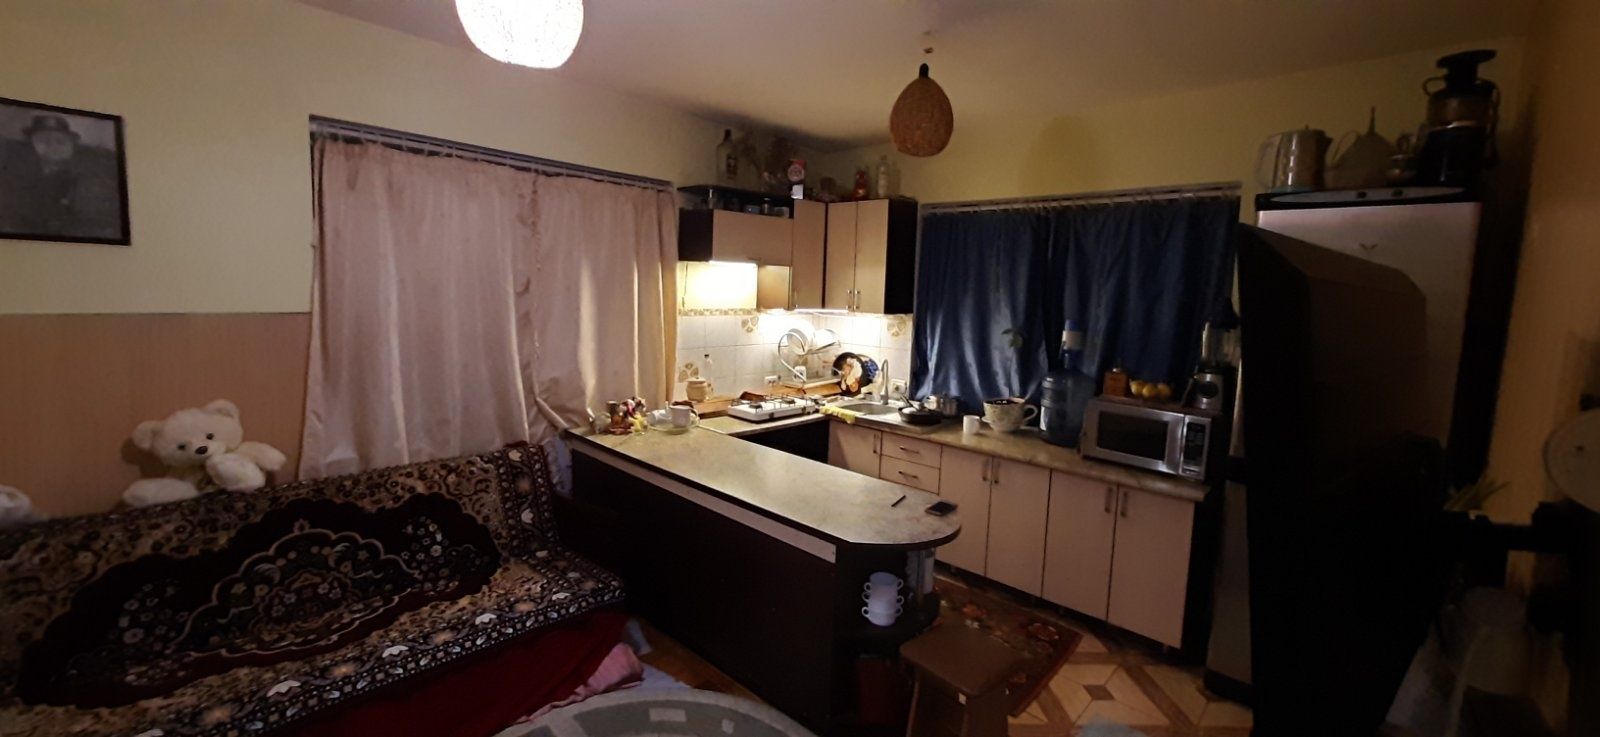 Продам особняк 2 этажа гараж и подвал в цоколе Черновцах район Роша